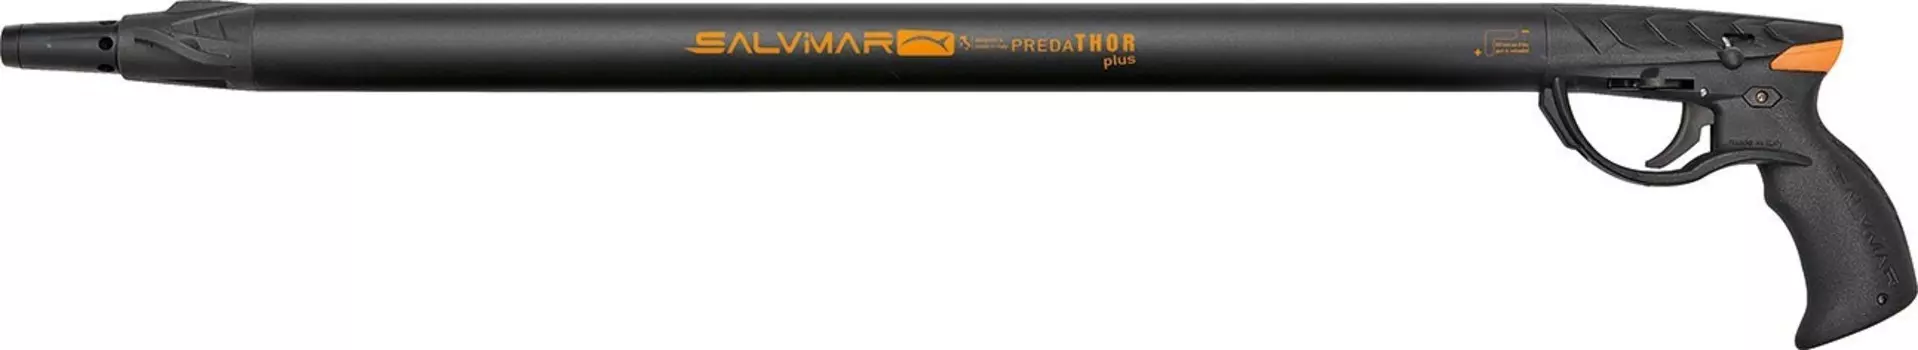 Ружье Пневматическое Salvimar Predathor Plus С Регулятором, 55 См